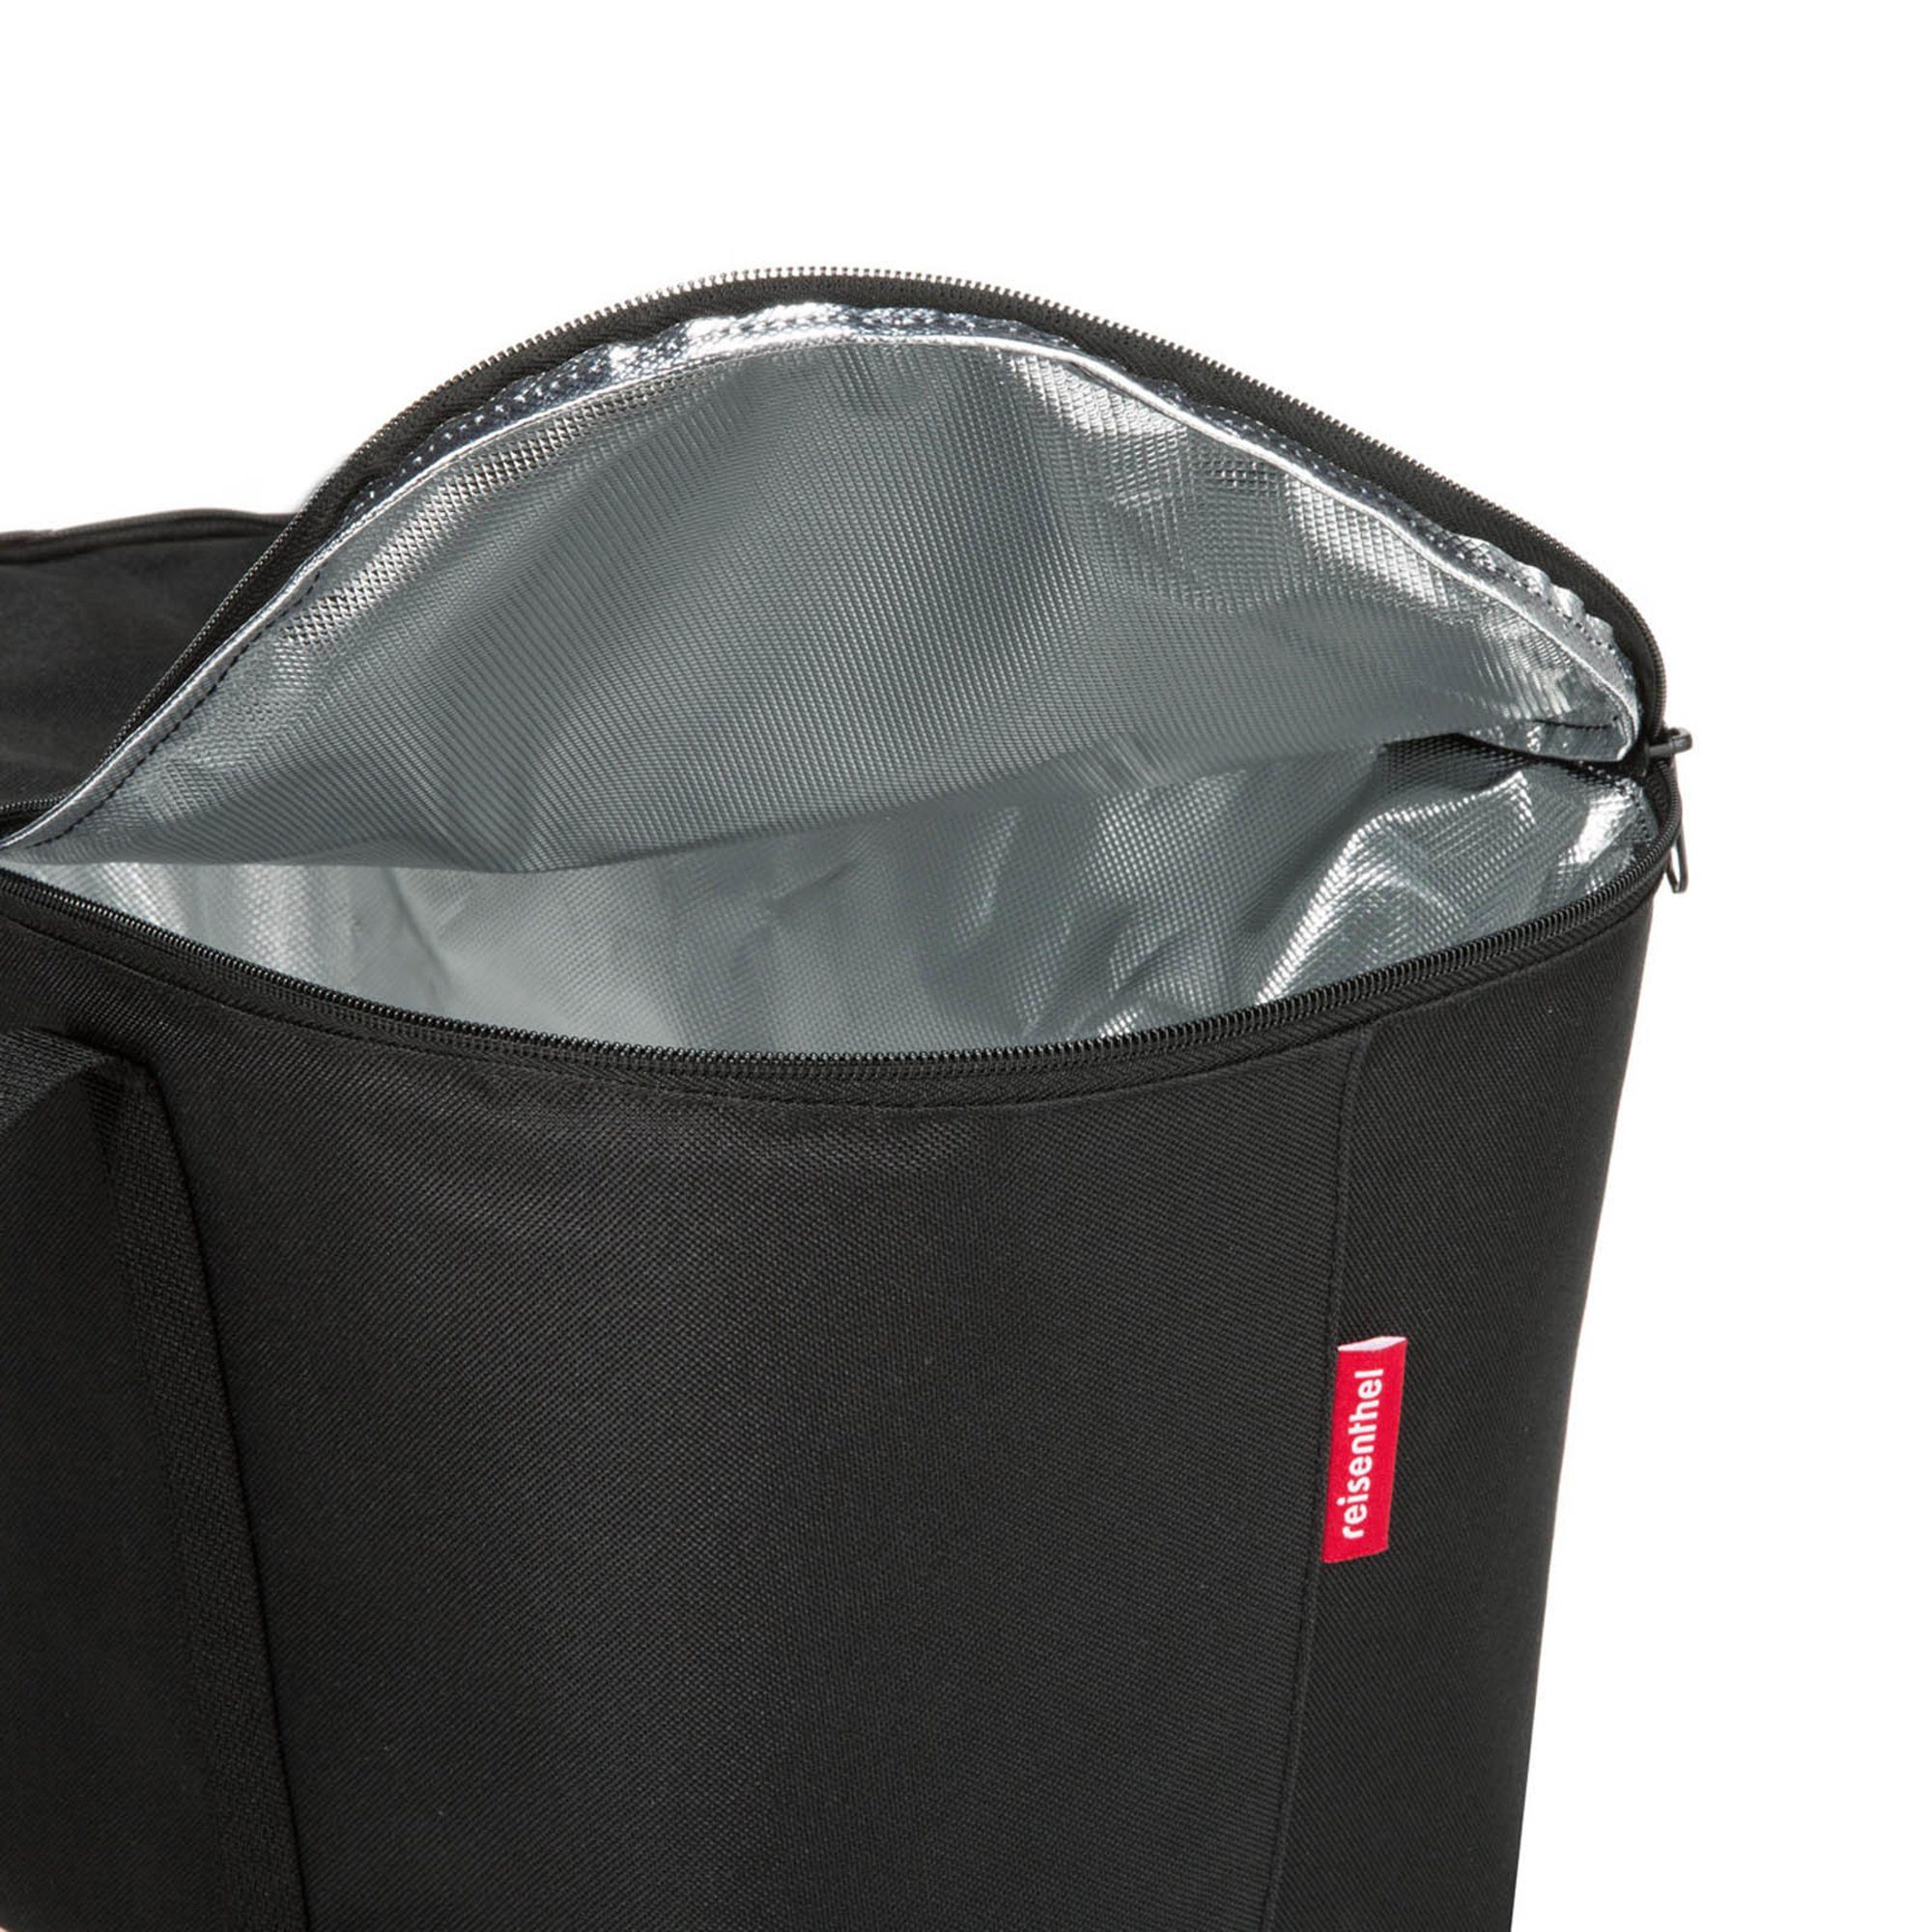 REISENTHEL® Kühltasche Aufbewahrungstasche black coolerbag, Kühltasche